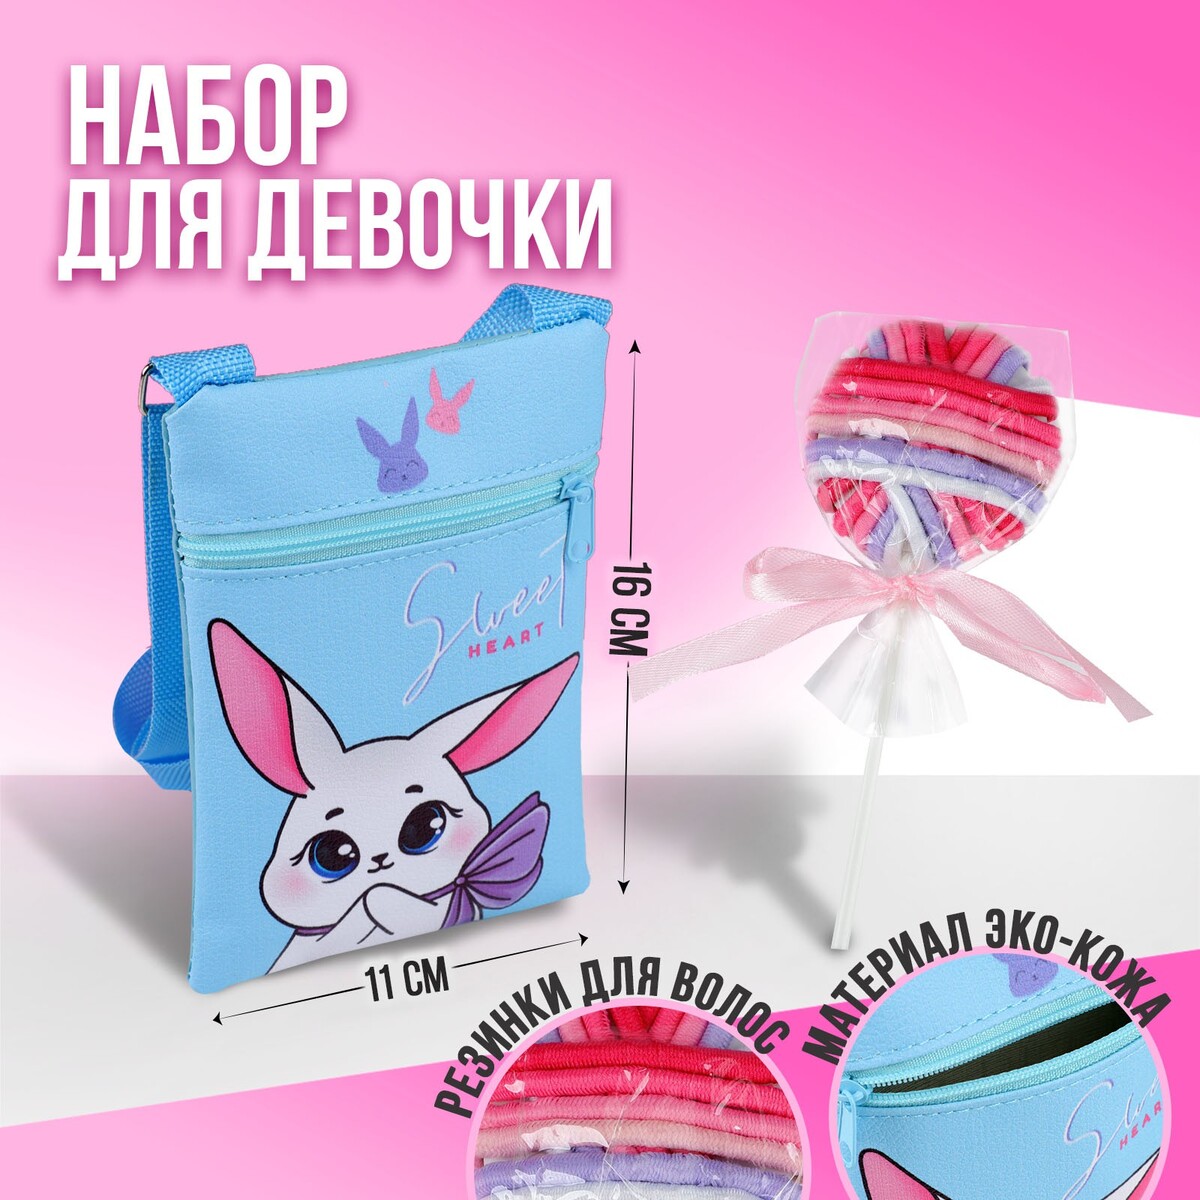 Набор для девочки белый зайчик: сумка и резинки для волос, цвет голубой/розовый